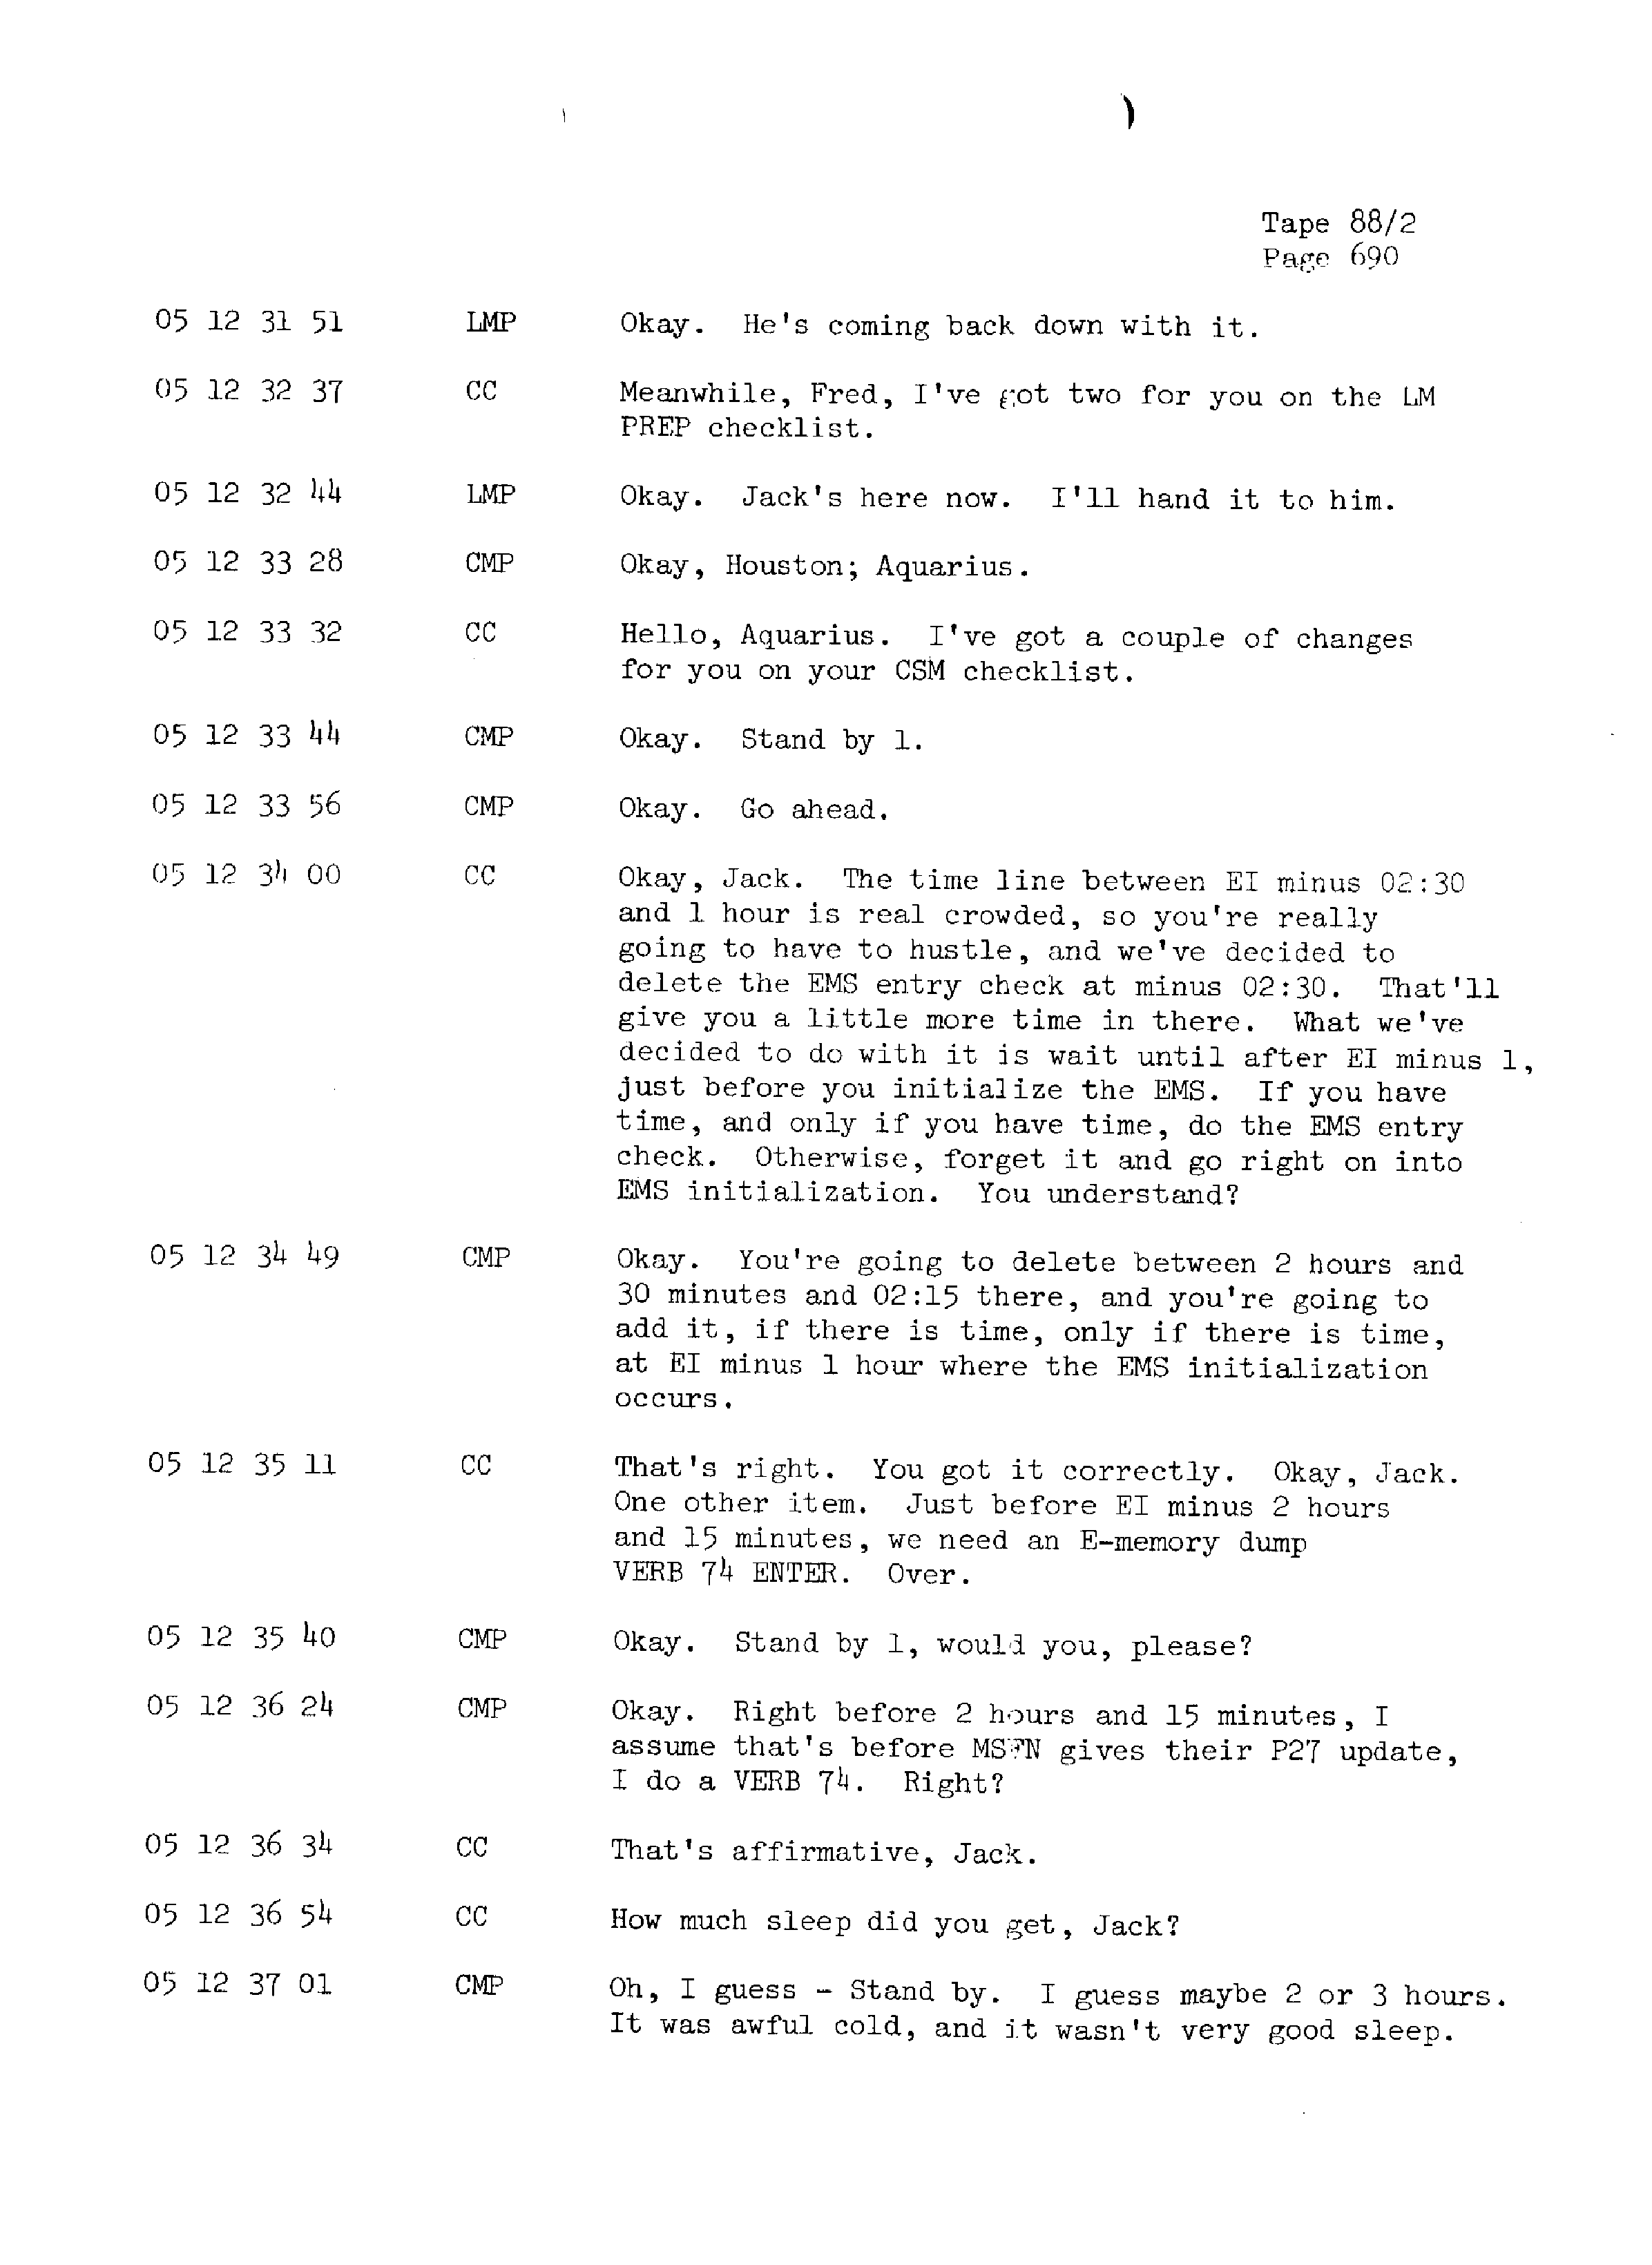 Page 697 of Apollo 13’s original transcript